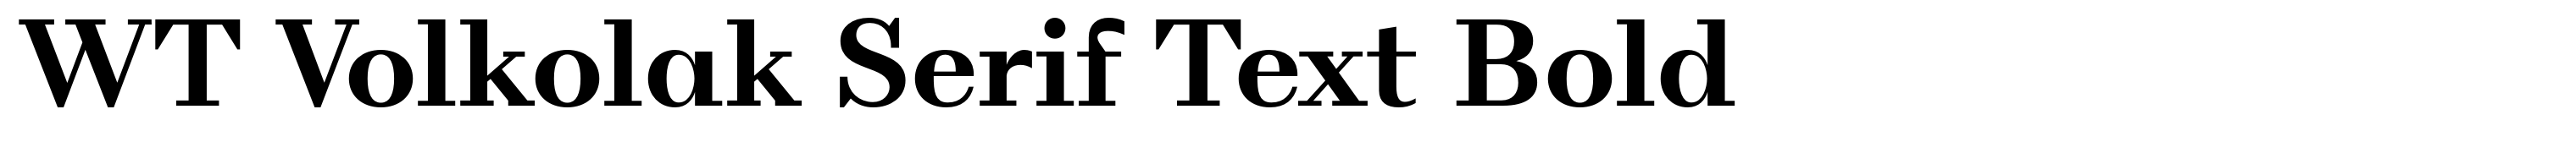 WT Volkolak Serif Text Bold